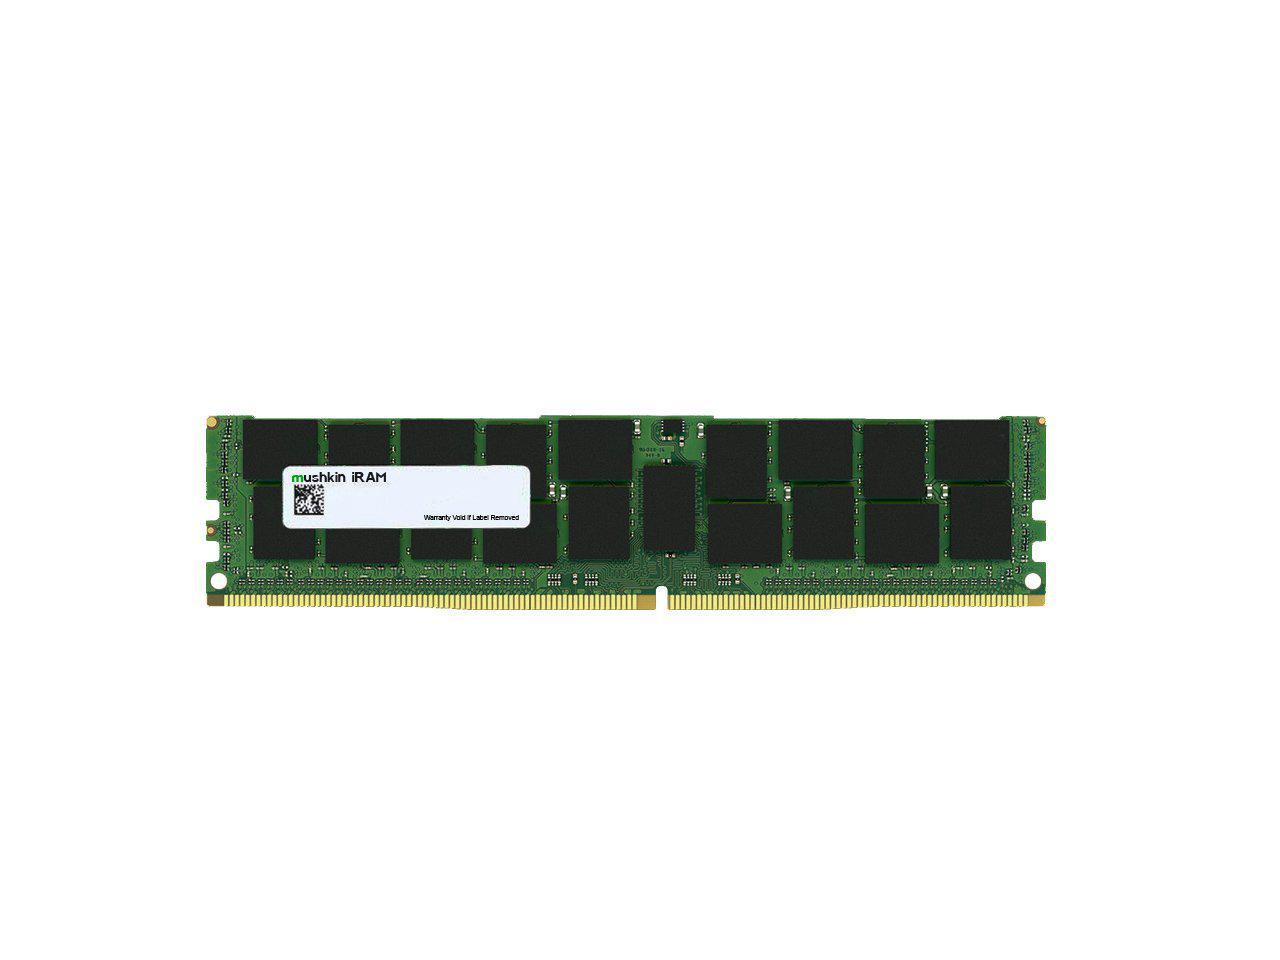 Mushkin 8GB DDR4 RDIMM PC4-2666 Model MAR4R266KF8G18